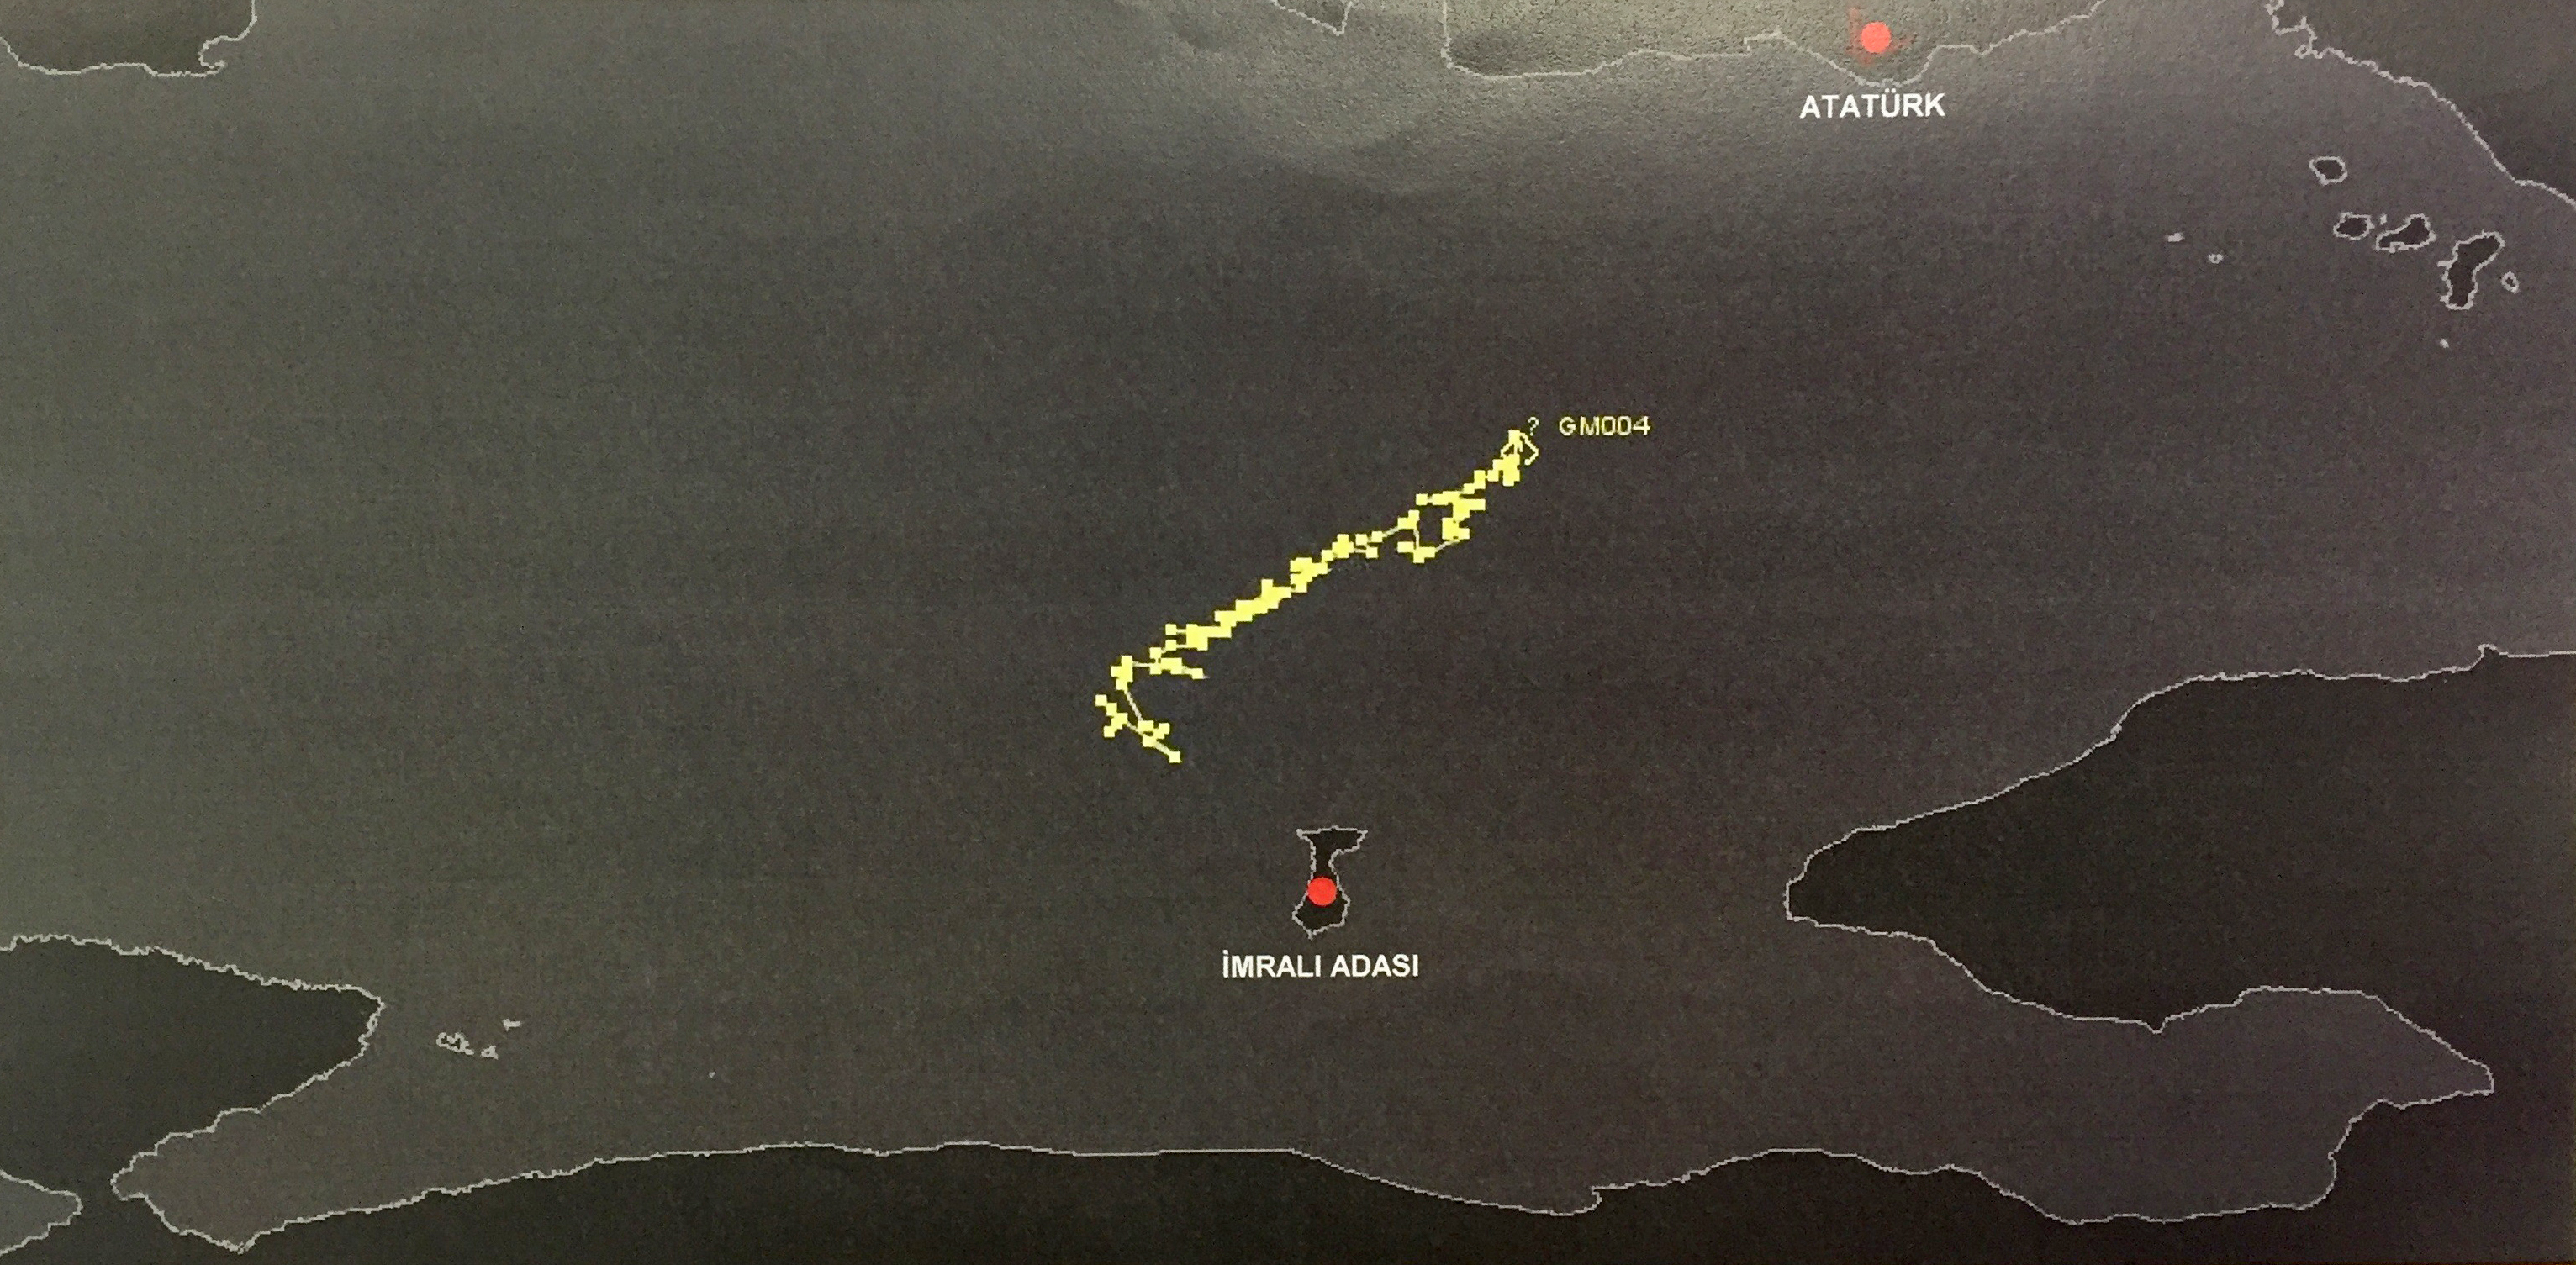 Helikopterlerin İmralı Adası çevresinde yoğun şekilde uçtukları tespit edildi. İmralı Adası üzerinde farklı saatlerde, farklı helikopterlerin hava trafiği kayıtlara yansıdı.